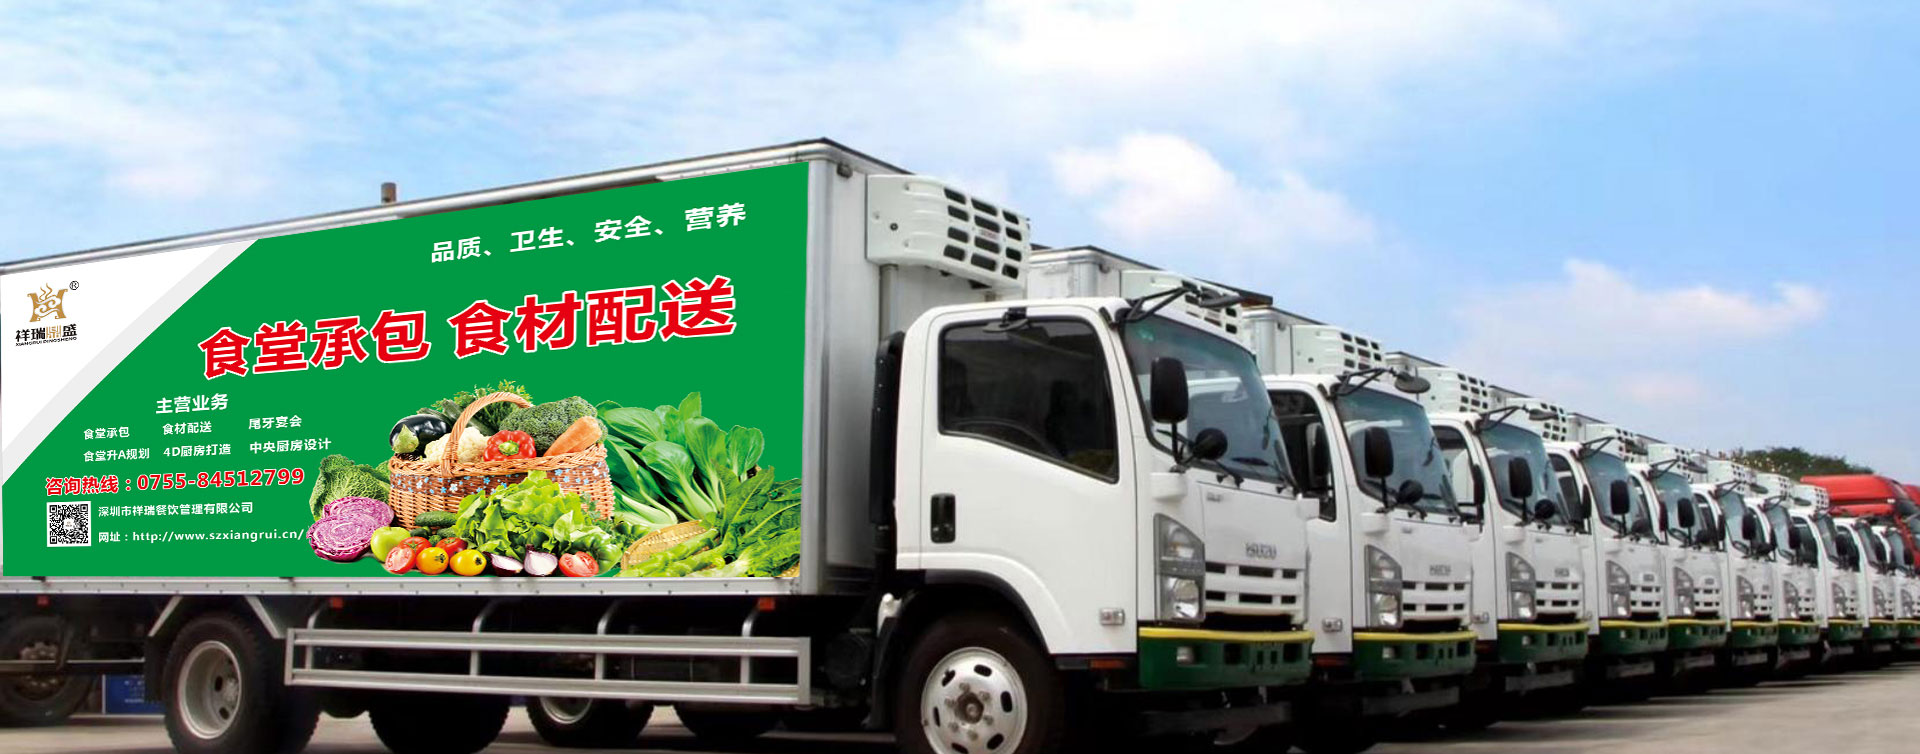 首页轮播图_Shenzhen Xiangrui Catering Management Co., Ltd.